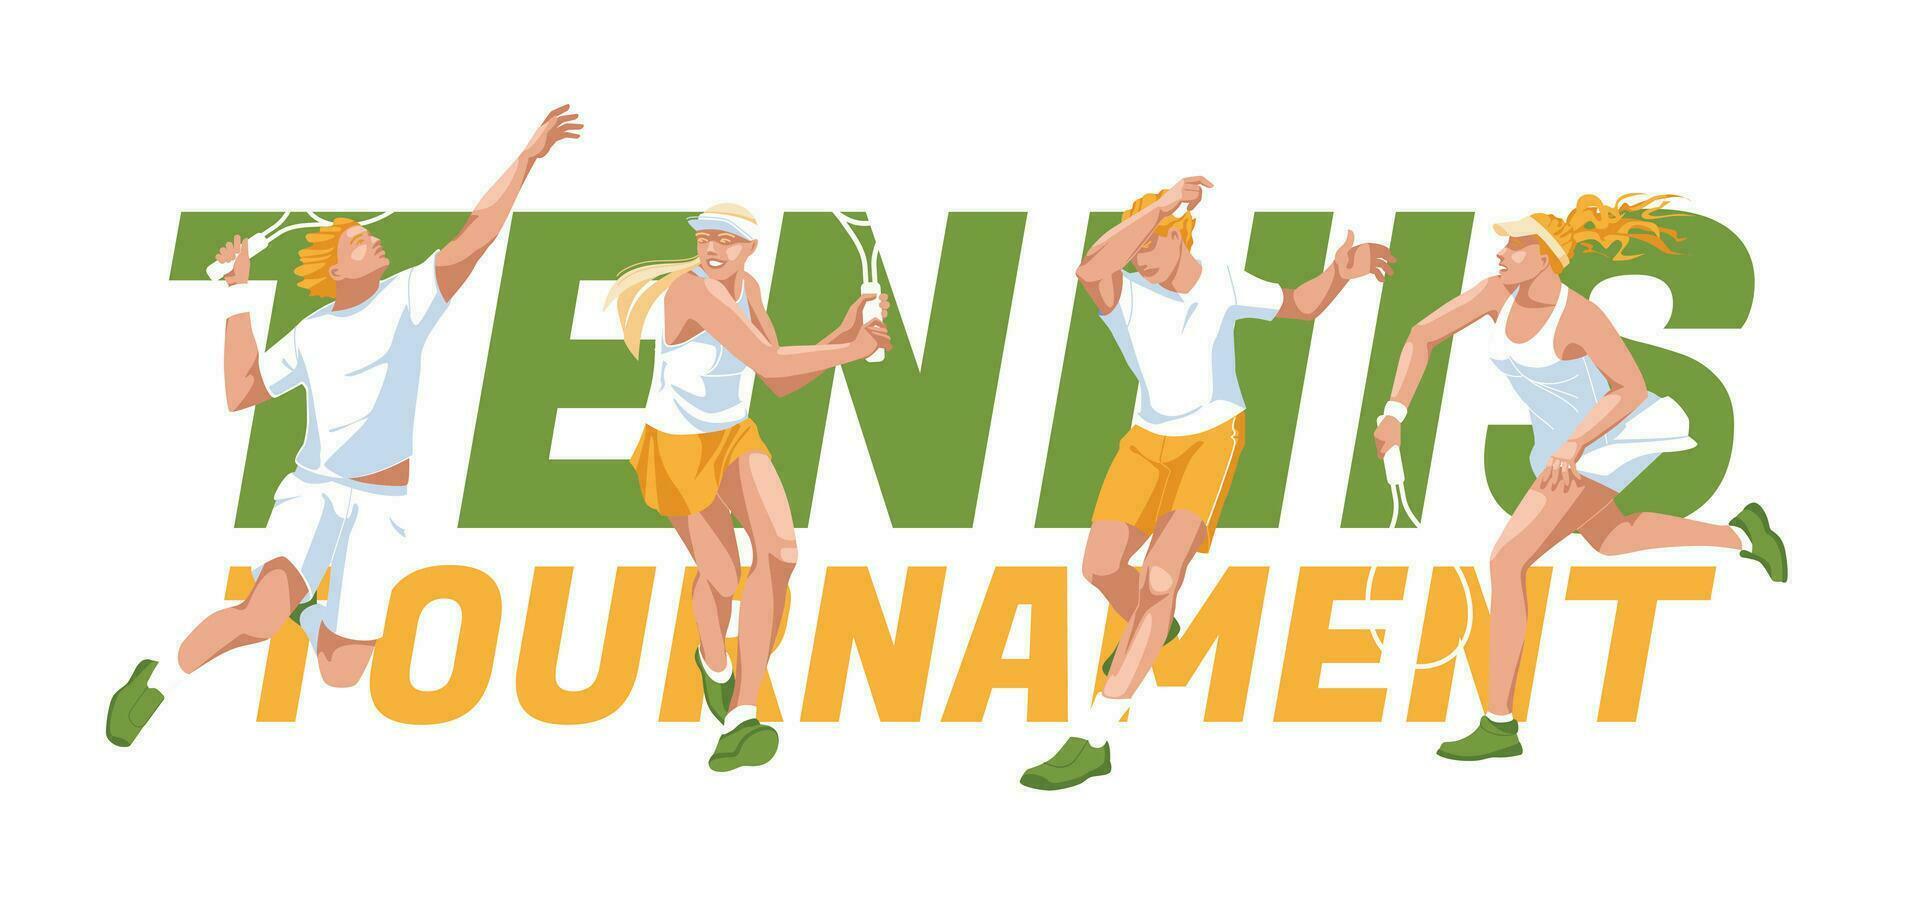 tennis spelare i sporter uniformer i annorlunda poser på de bakgrund av en stor text. annons av tändstickor, tävlingar, sporter klubbar. vektor platt illustration